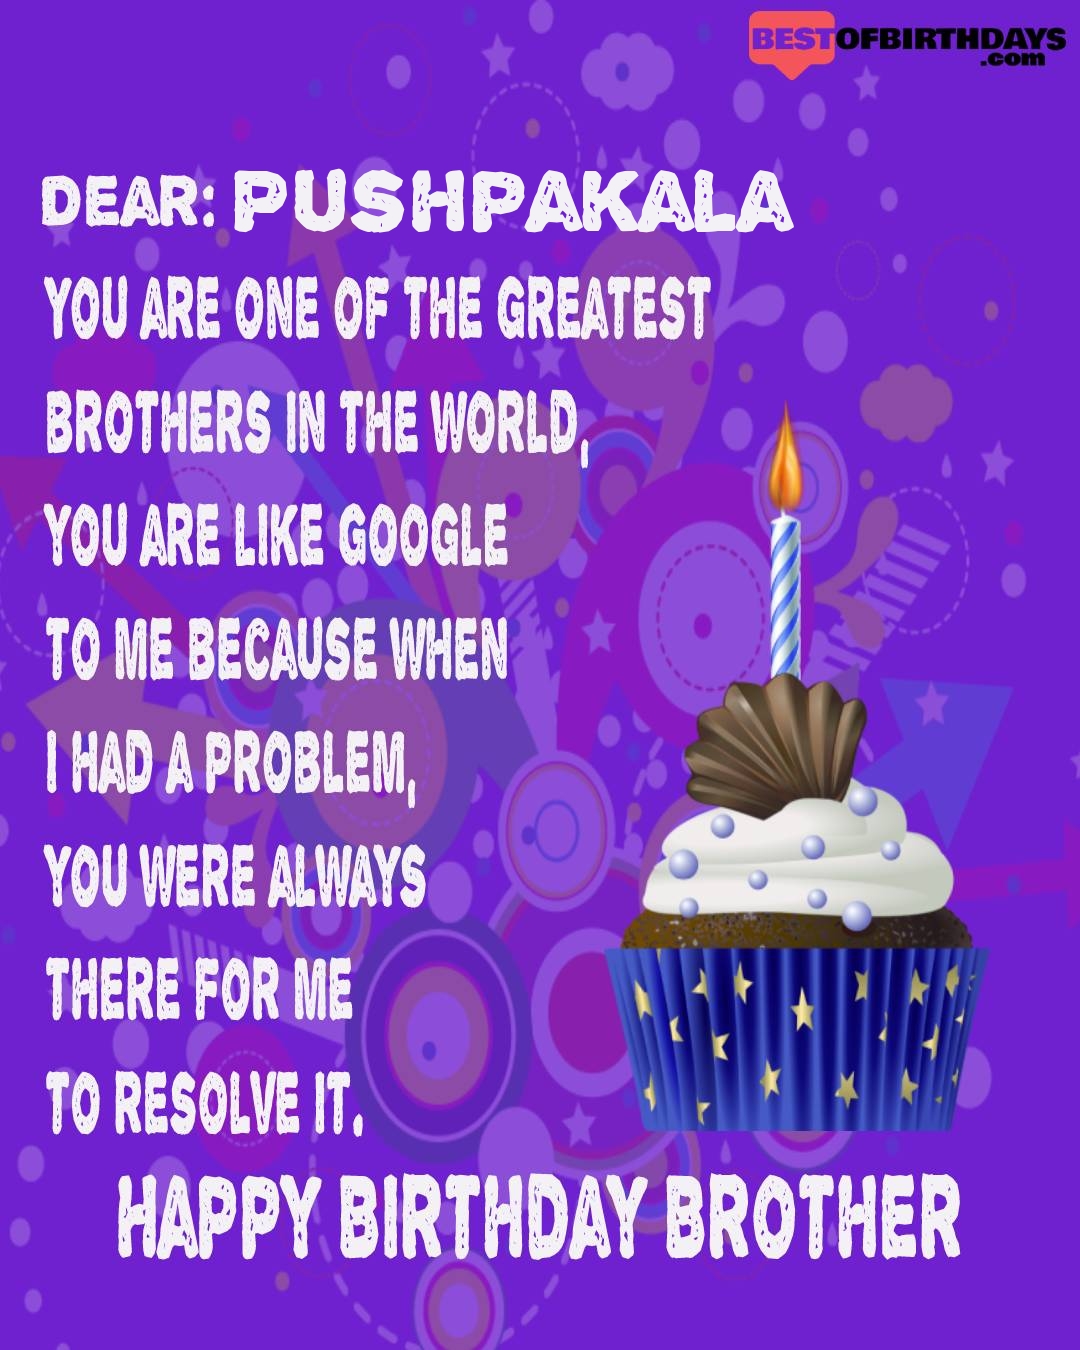 Happy birthday pushpakala bhai brother bro